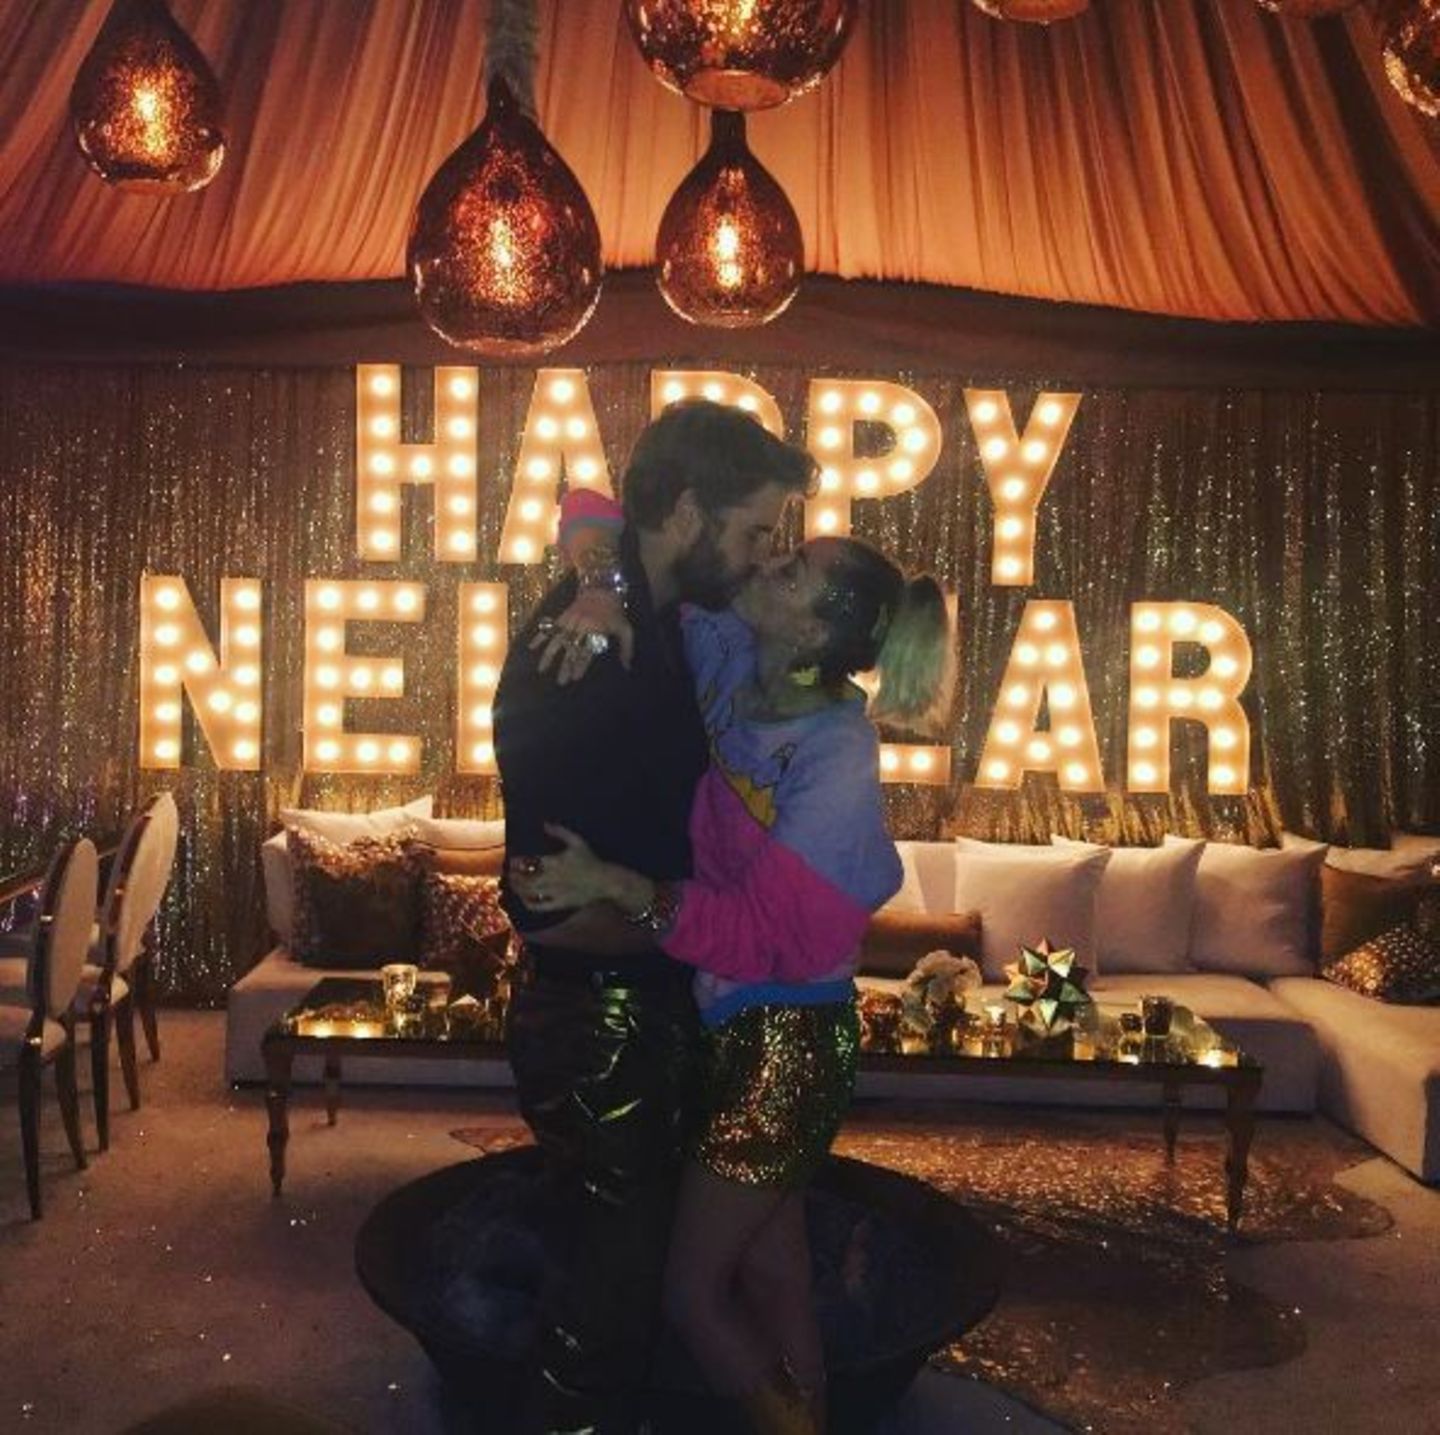 Liam Hemsworth und Miley Cyrus feiern eine große Silvesterparty mit ihren Familien. Der obligatorische Kuss um 0 Uhr darf natürlich auch bei den Filmstars nicht fehlen. Bei so viel Liebe fagen wir uns natürlich, ob wir uns 2017 endlich über eine Hochzeit freuen dürfen?